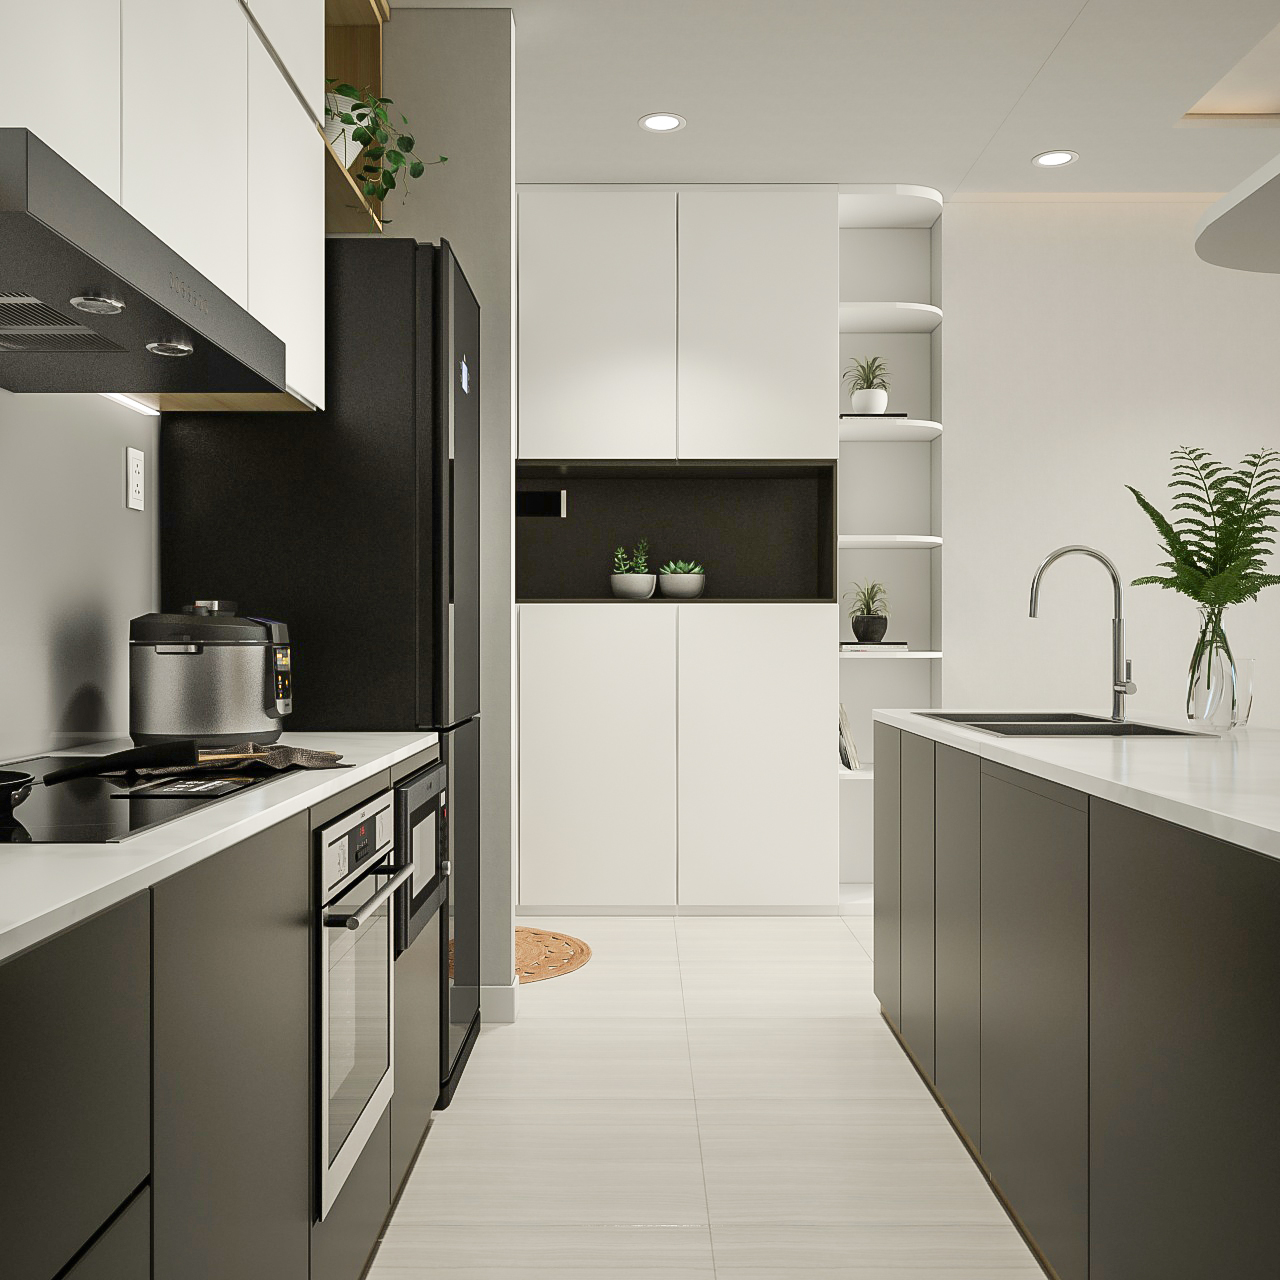 Lối vào, phòng bếp, phong cách Tối giản Minimalist, thiết kế concept nội thất, căn hộ The Tresor